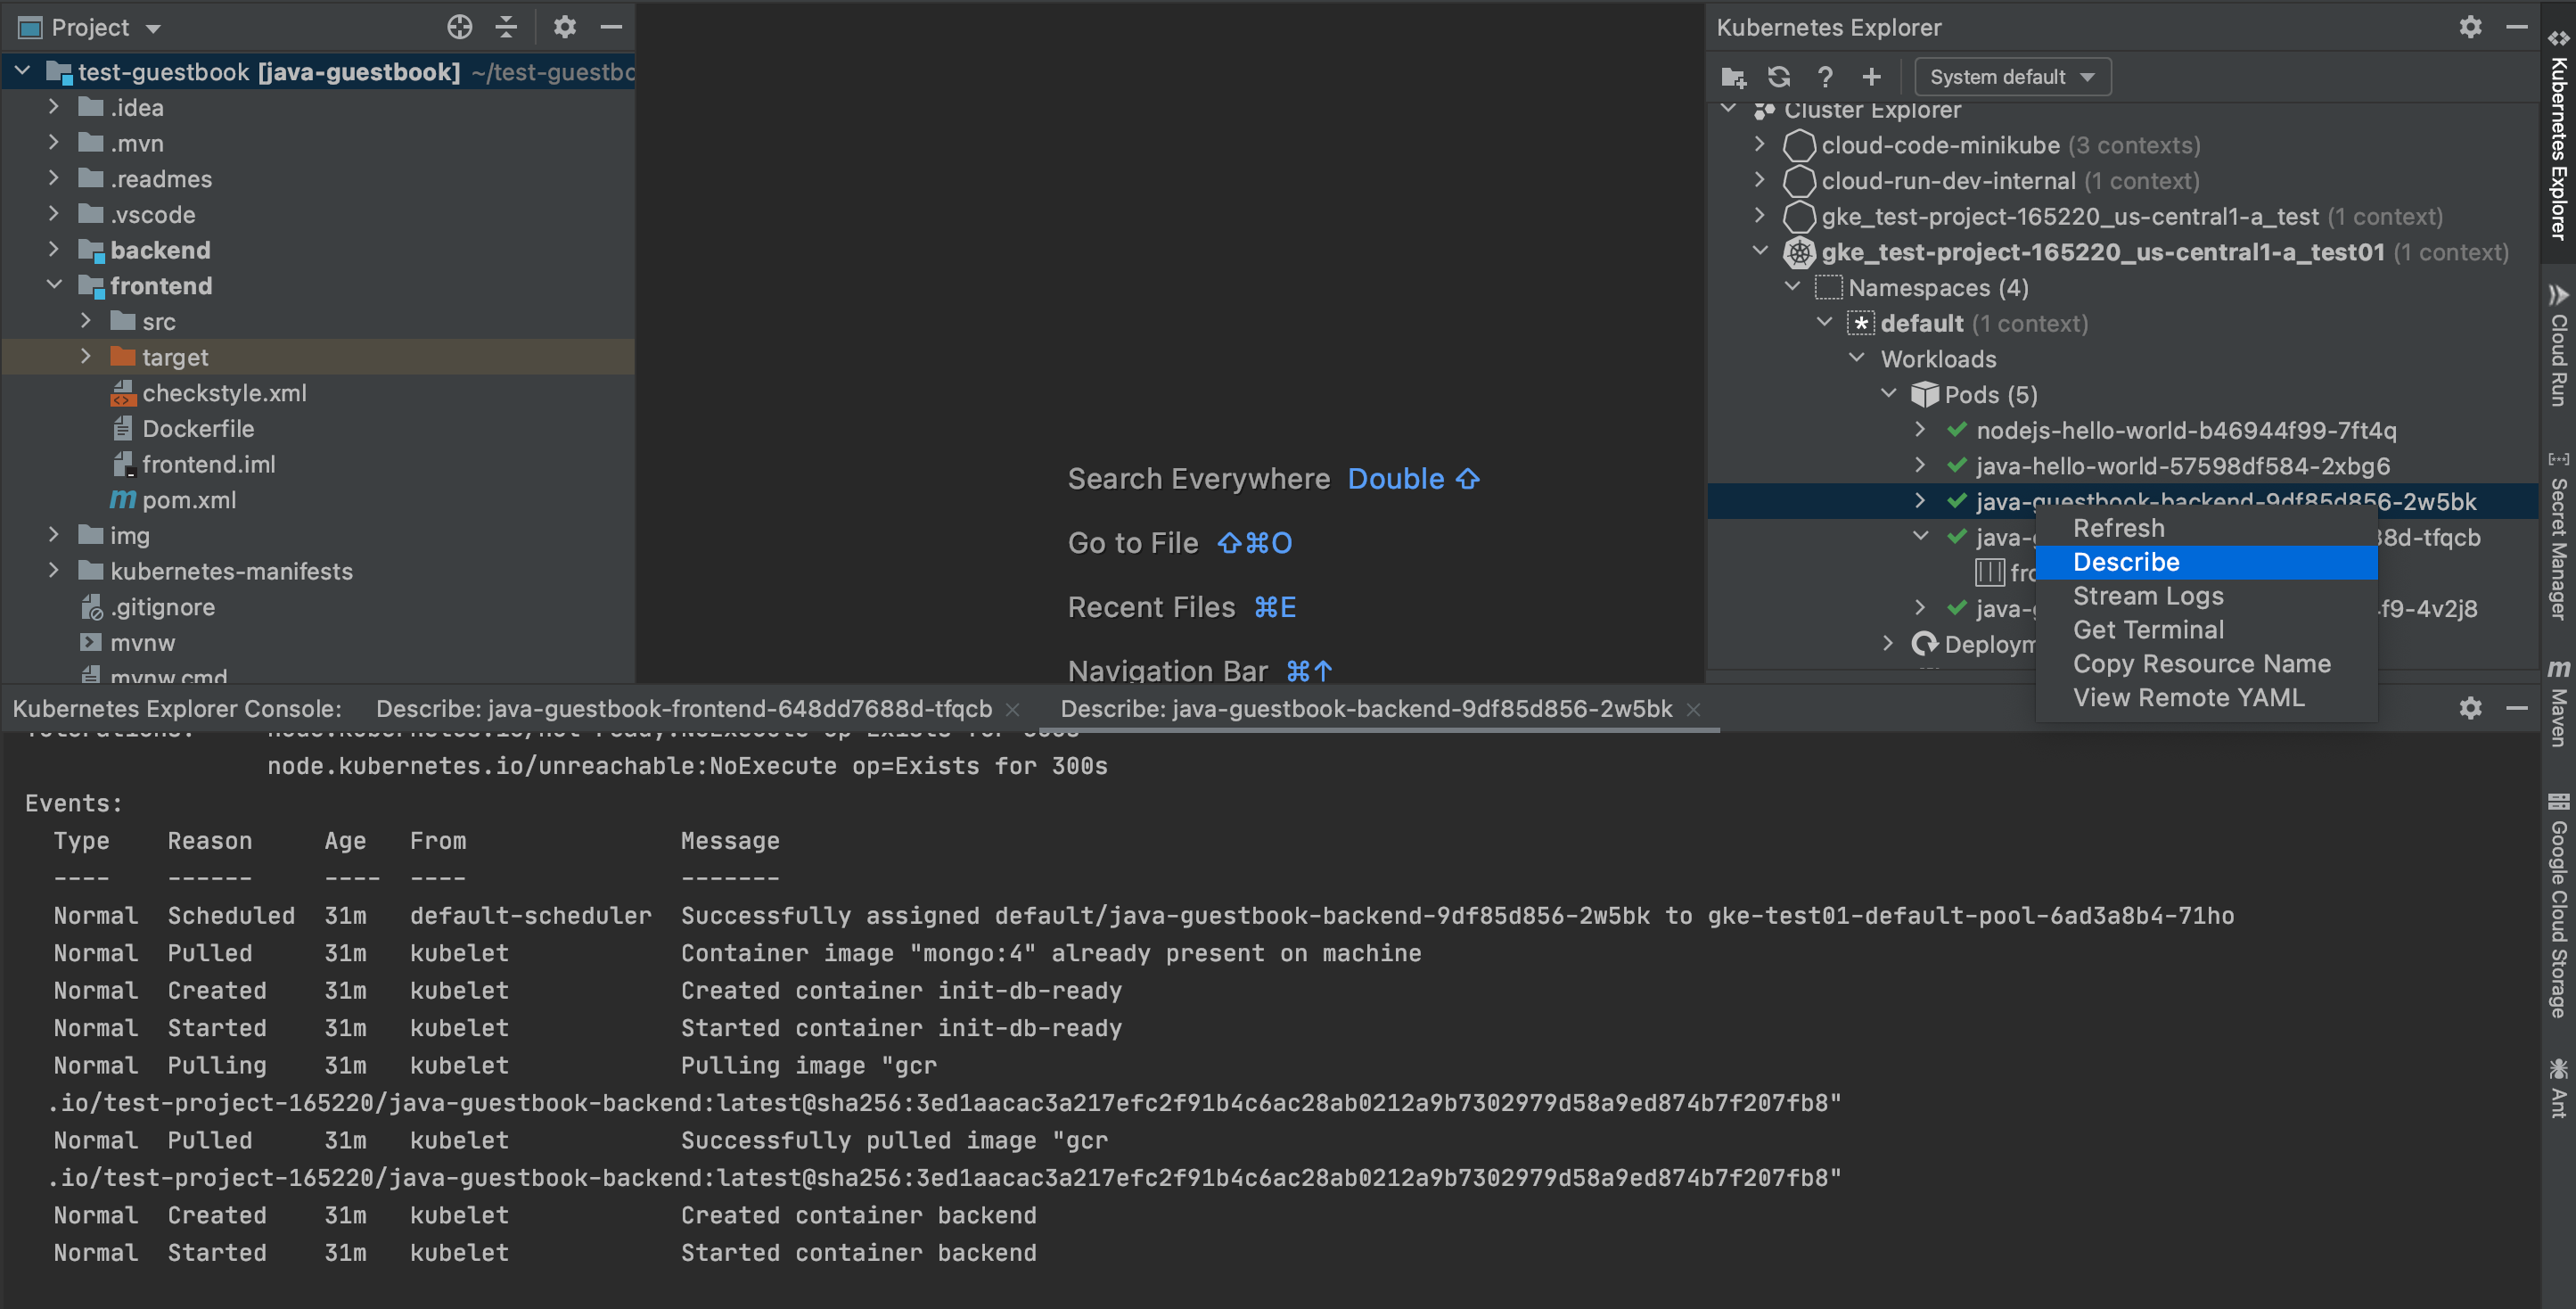 Beschreibungsoption, die verfügbar ist, wenn Sie im Kubernetes Explorer mit der rechten Maustaste auf eine entsprechende Ressource klicken und „Beschreiben“ auswählen